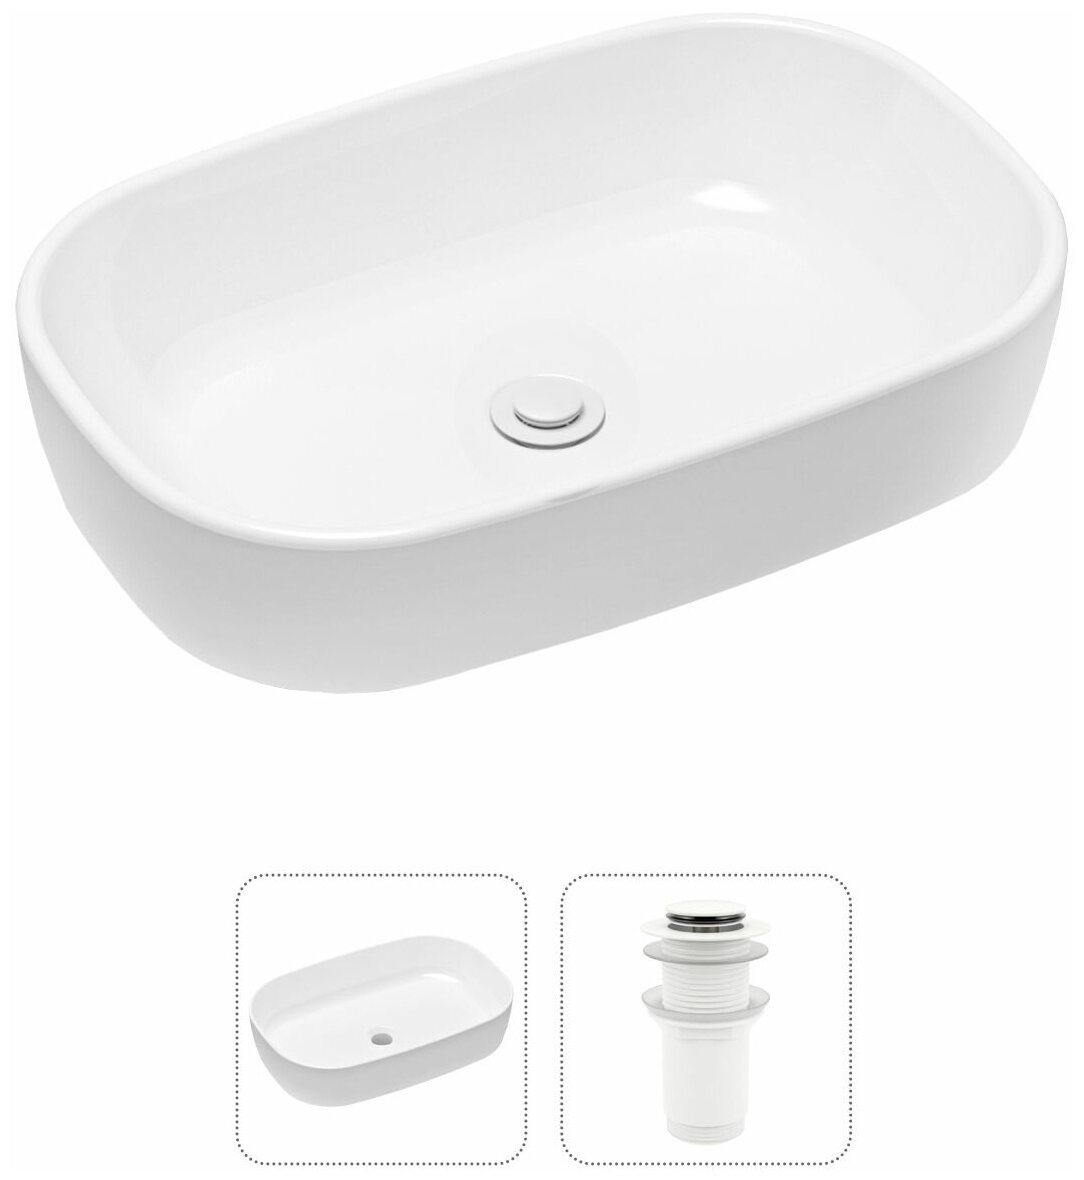 Комплект 2 в 1 Lavinia Boho Bathroom Sink 21520806: накладная фарфоровая раковина 54 см, донный клапан